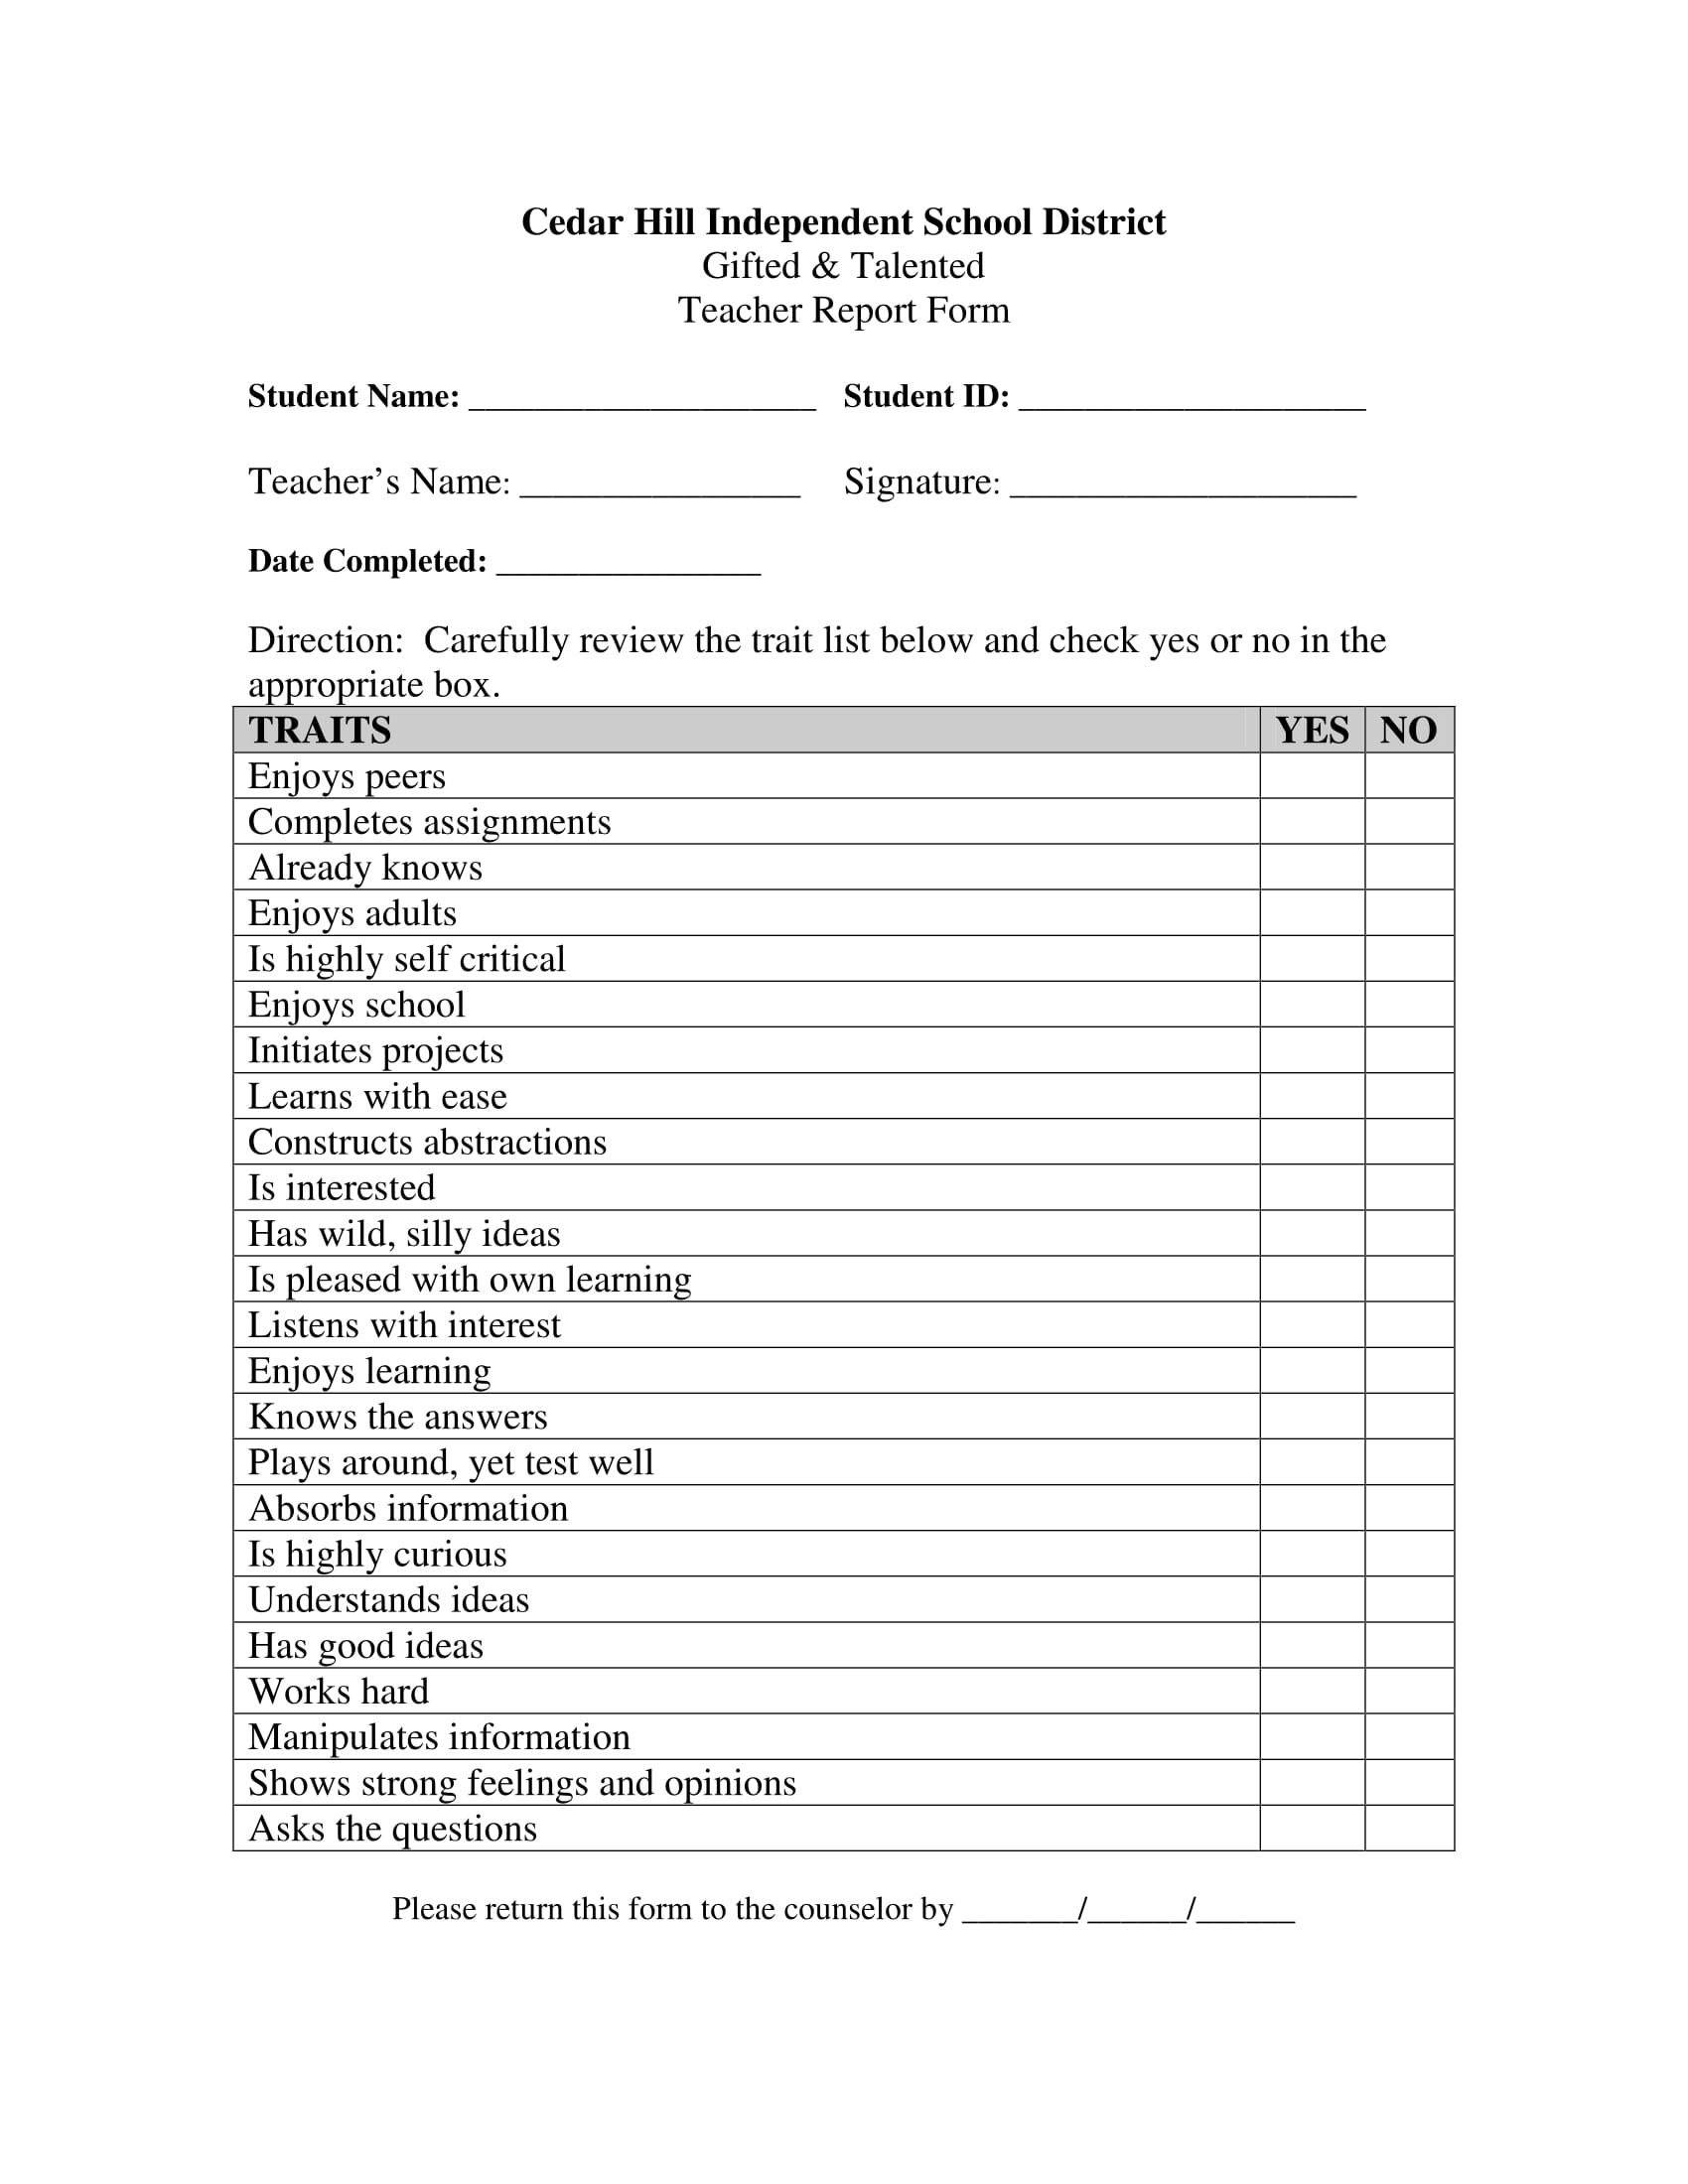 sample for teacher report form 1